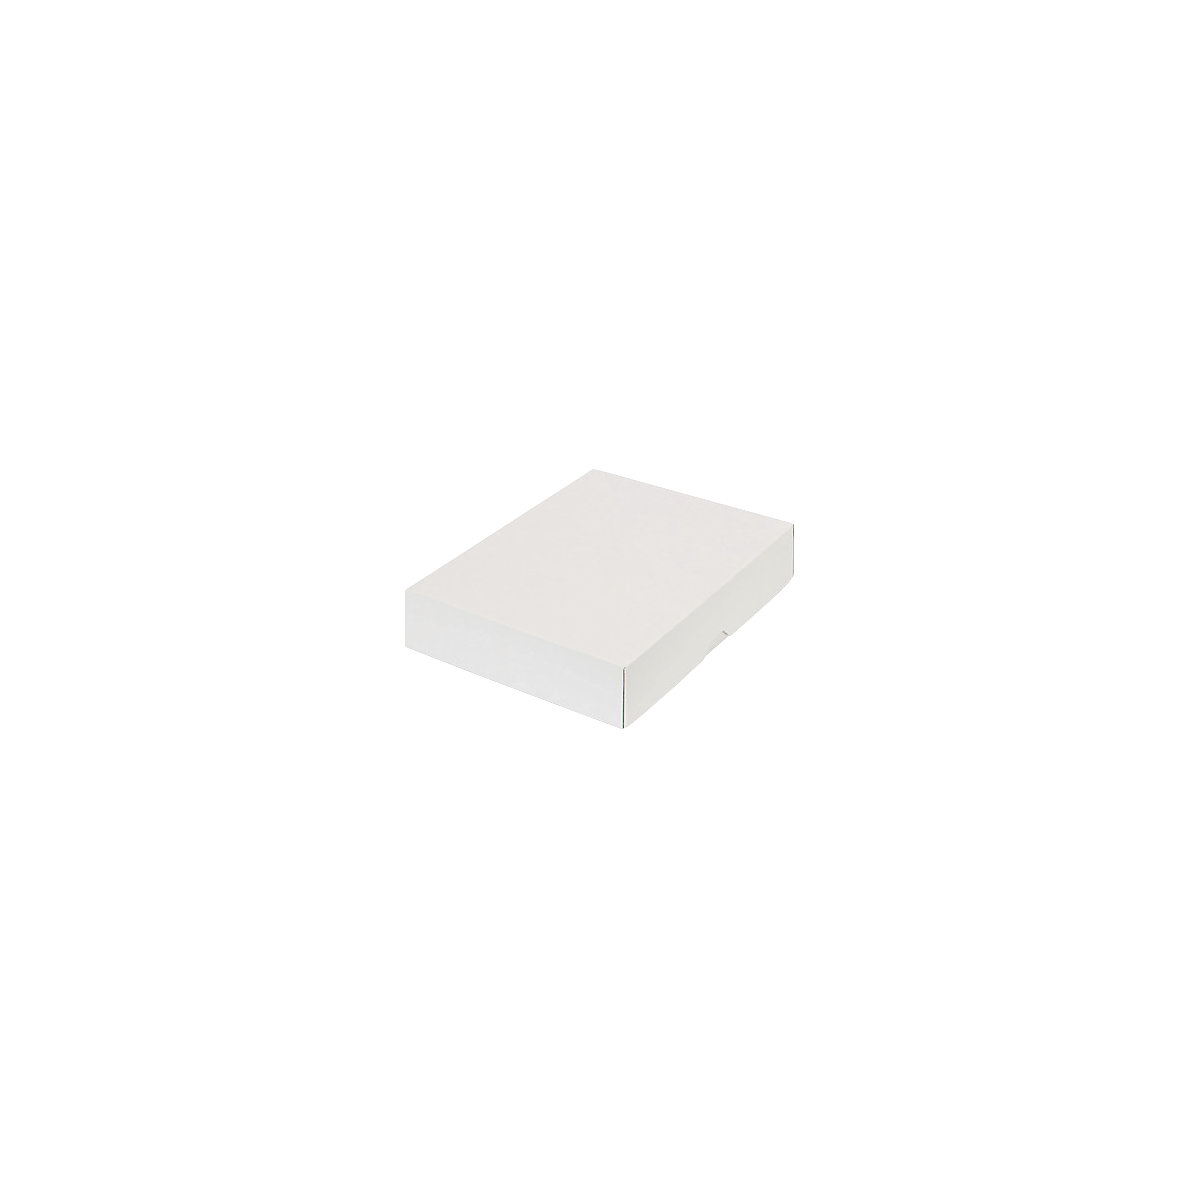 Stülpdeckelkarton, braun, Innenmaße 252 x 180 x 45 mm, B5, weiß, ab 30 Stk